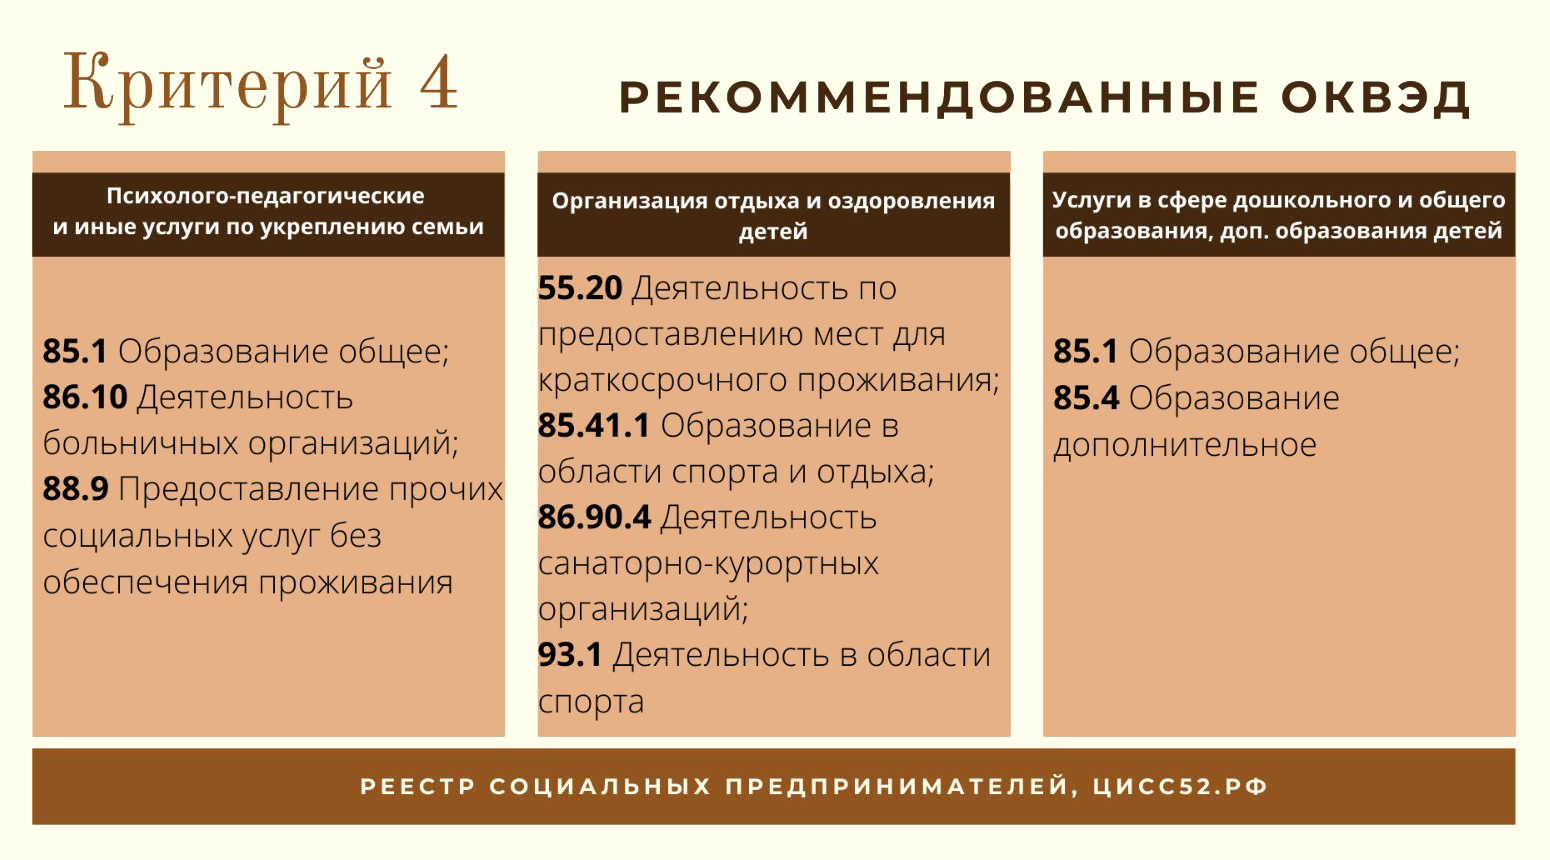 Это рекомендованные коды ОКВЭД для организаций и ИП, которые решают социальные проблемы. Источник: cissno52.ru